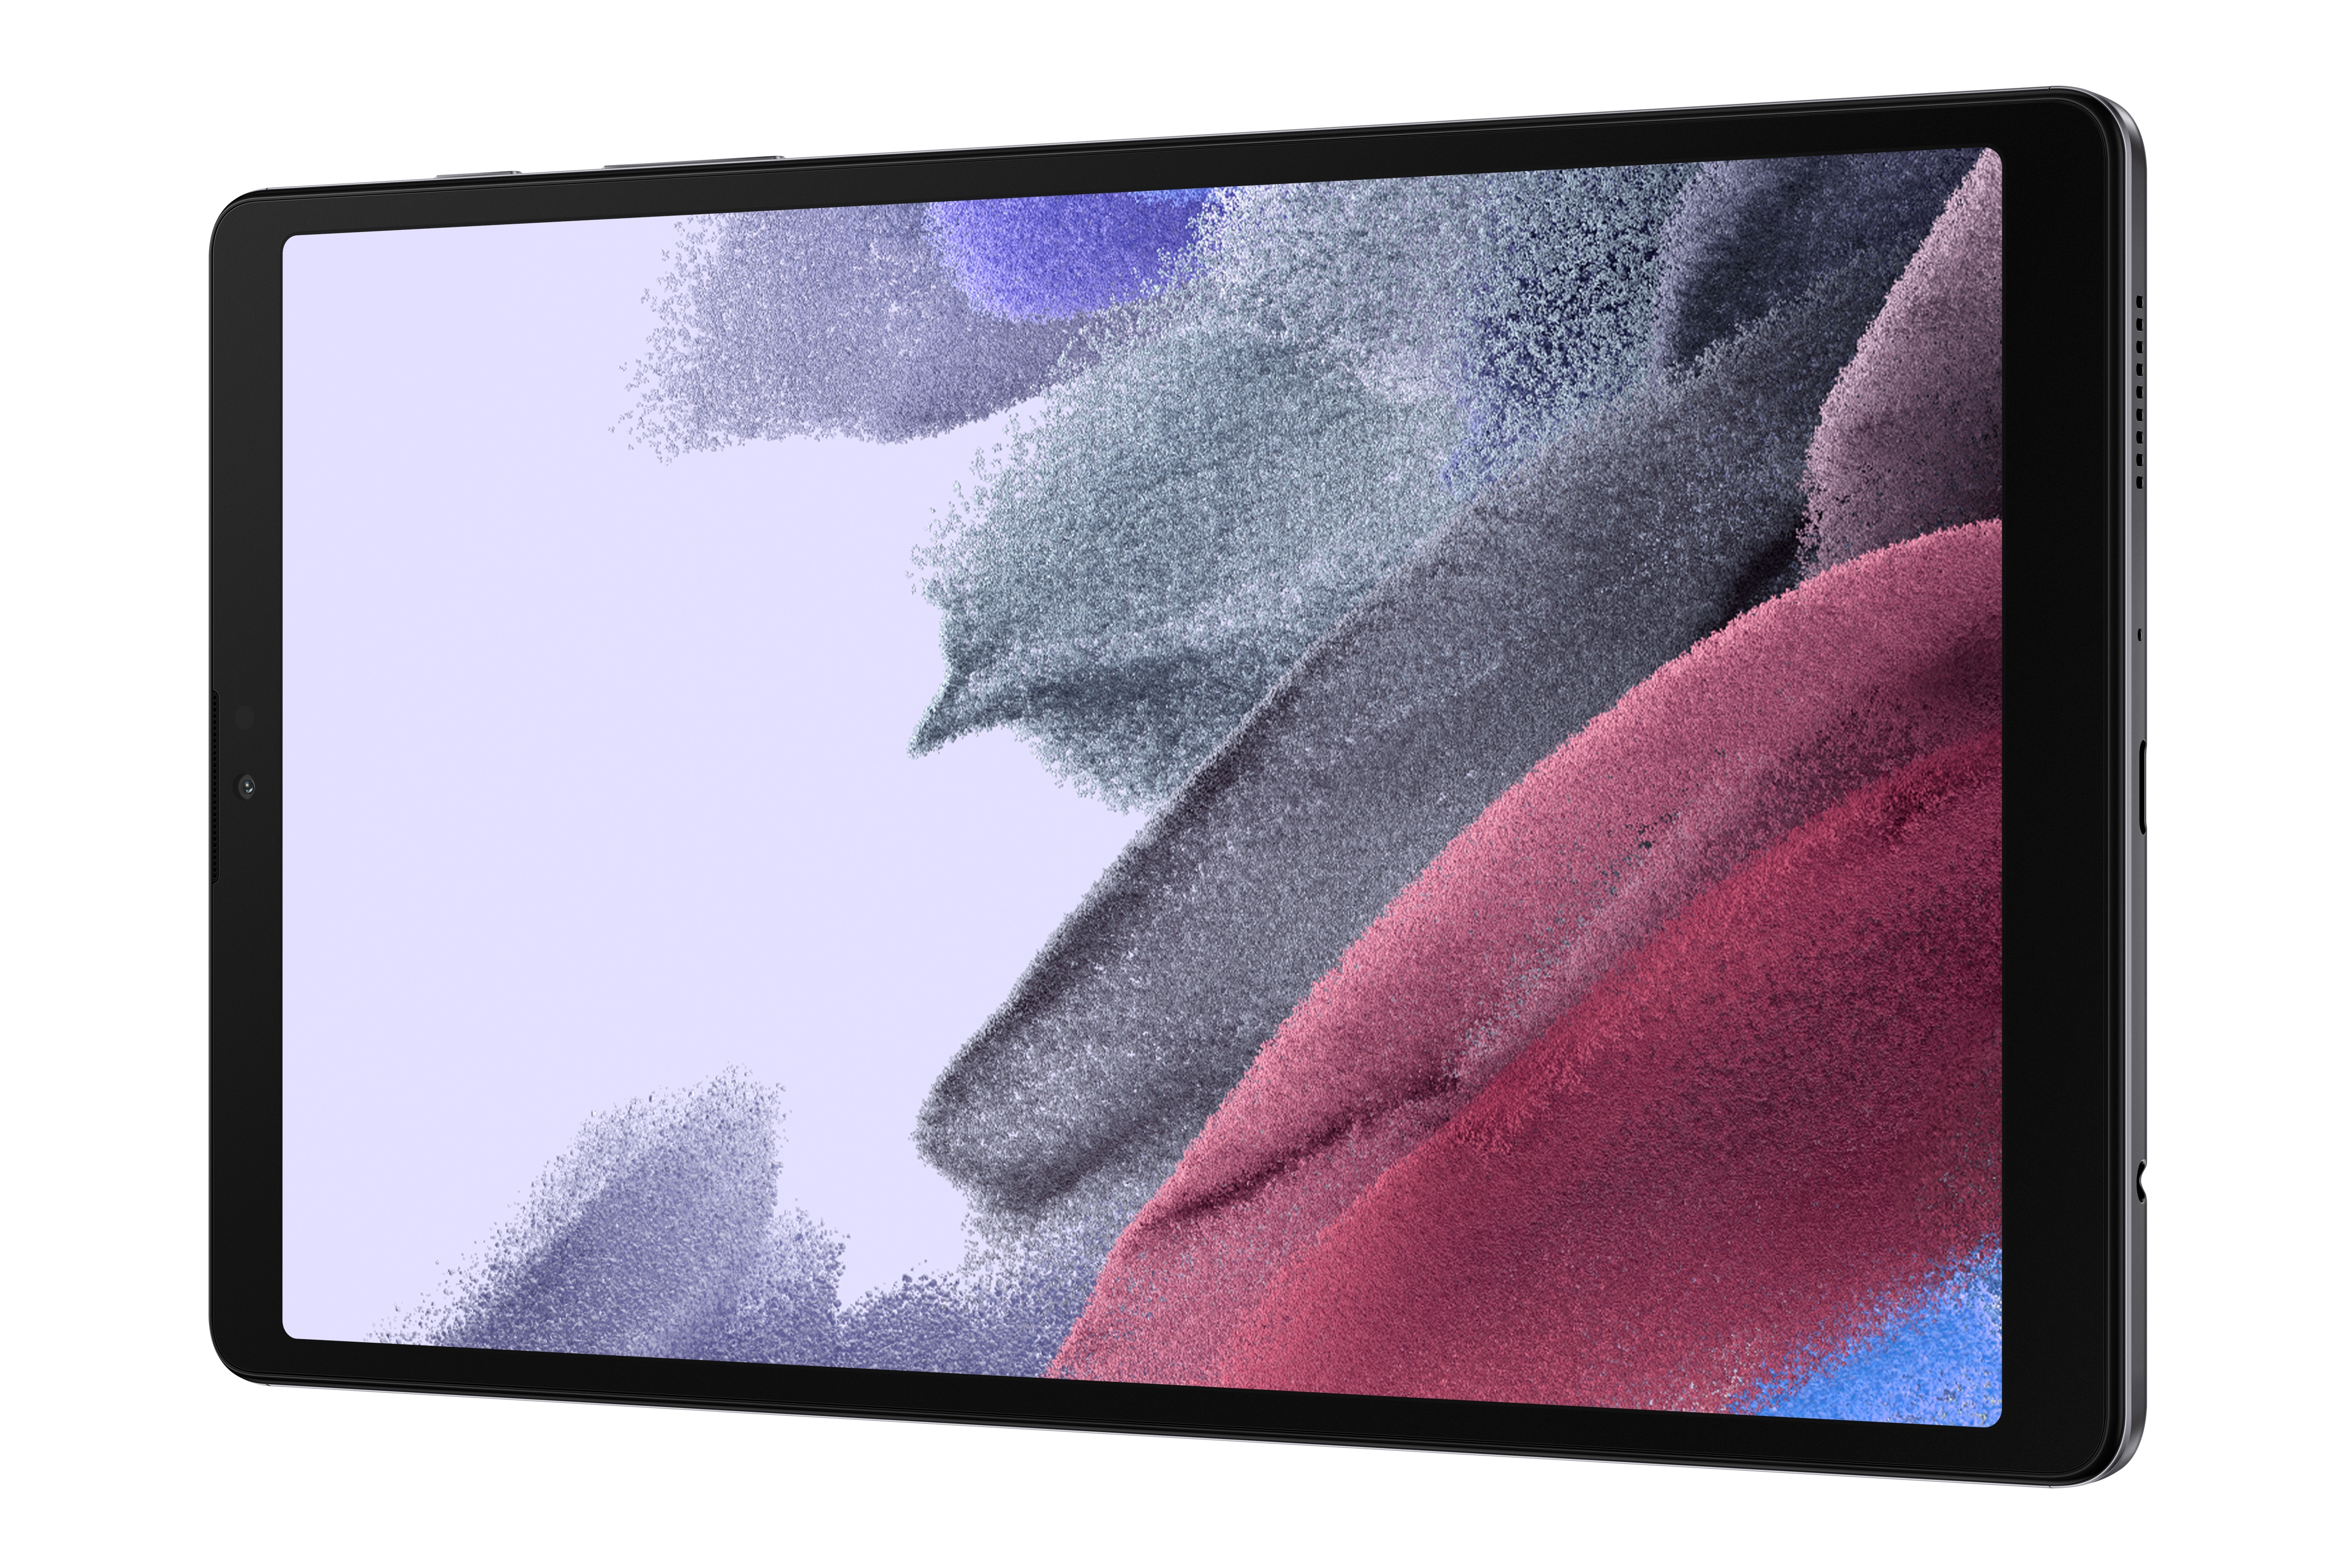 Thumbnail image of Galaxy Tab A7 Lite 8.7”, 32GB, Grey (AT&T)